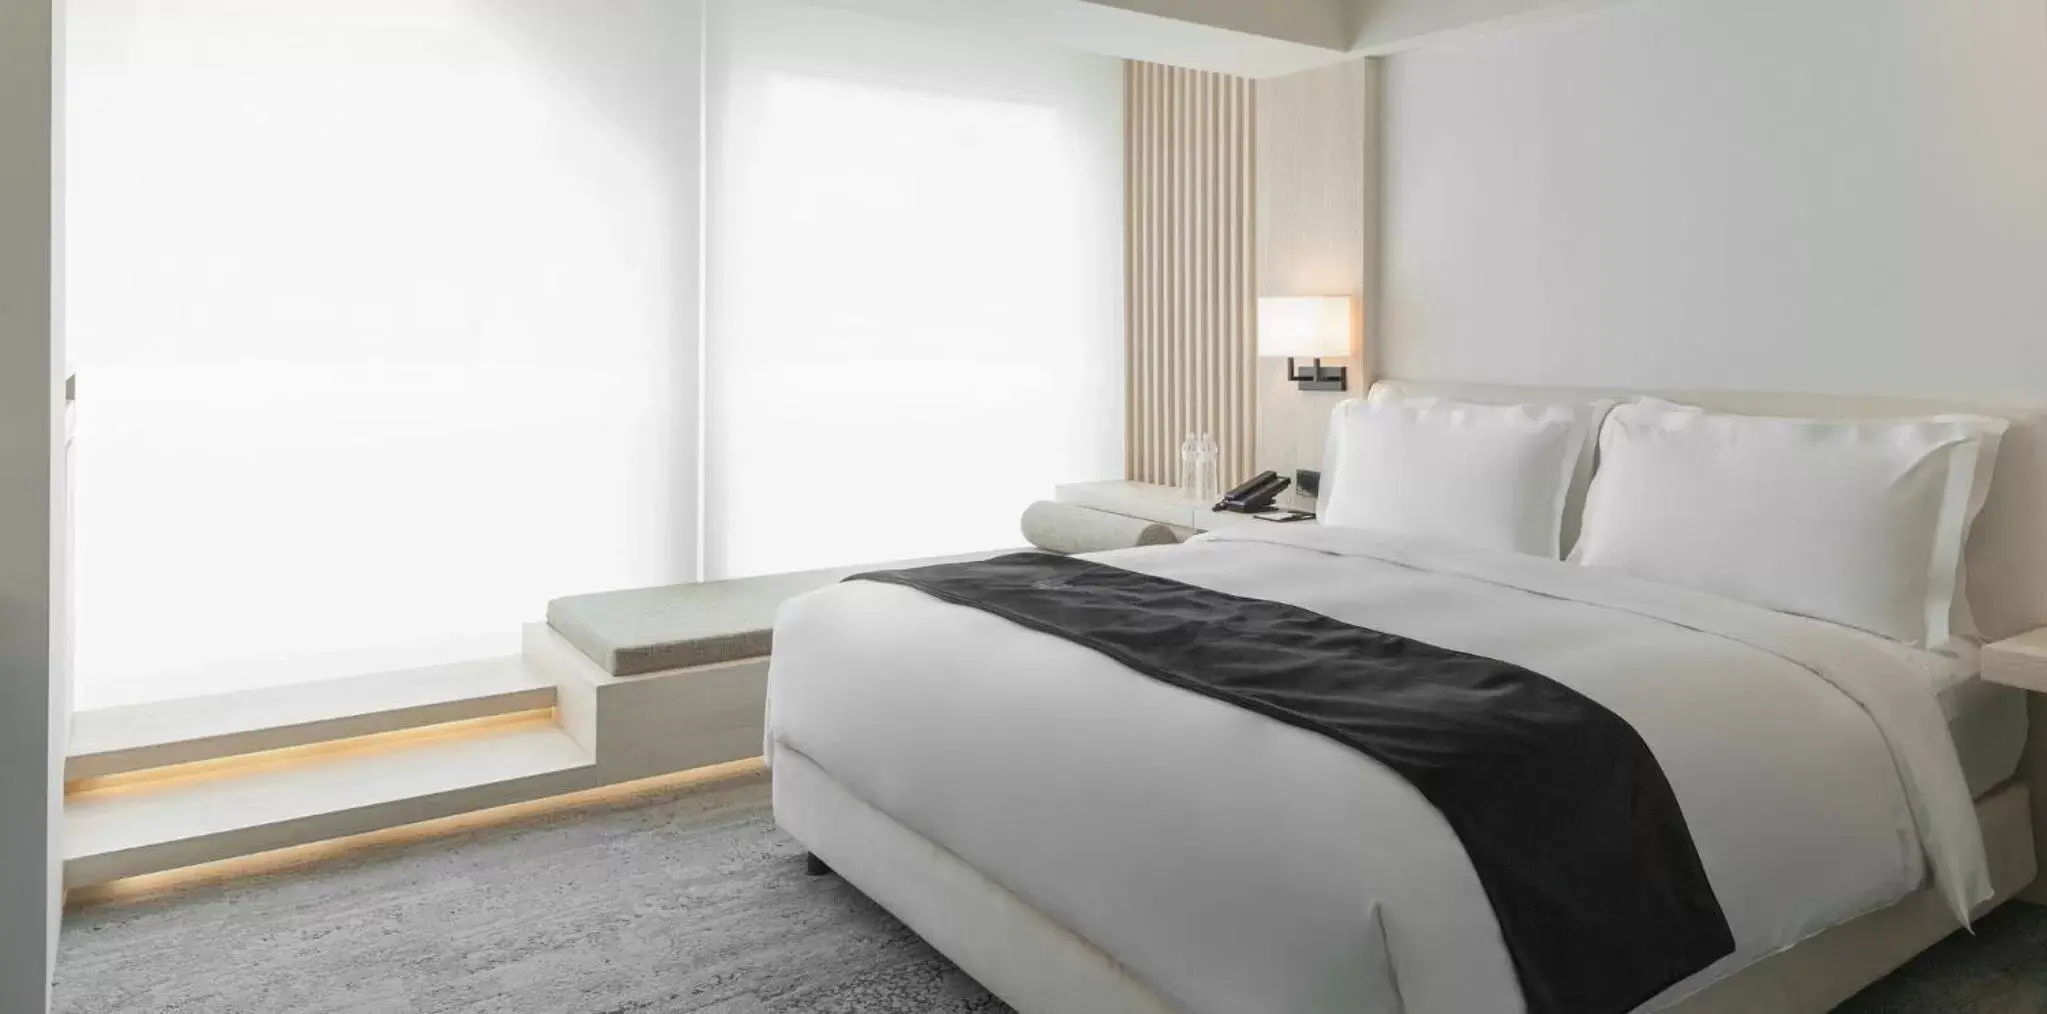 Bedroom, Bed in Swiio Hotel Daan